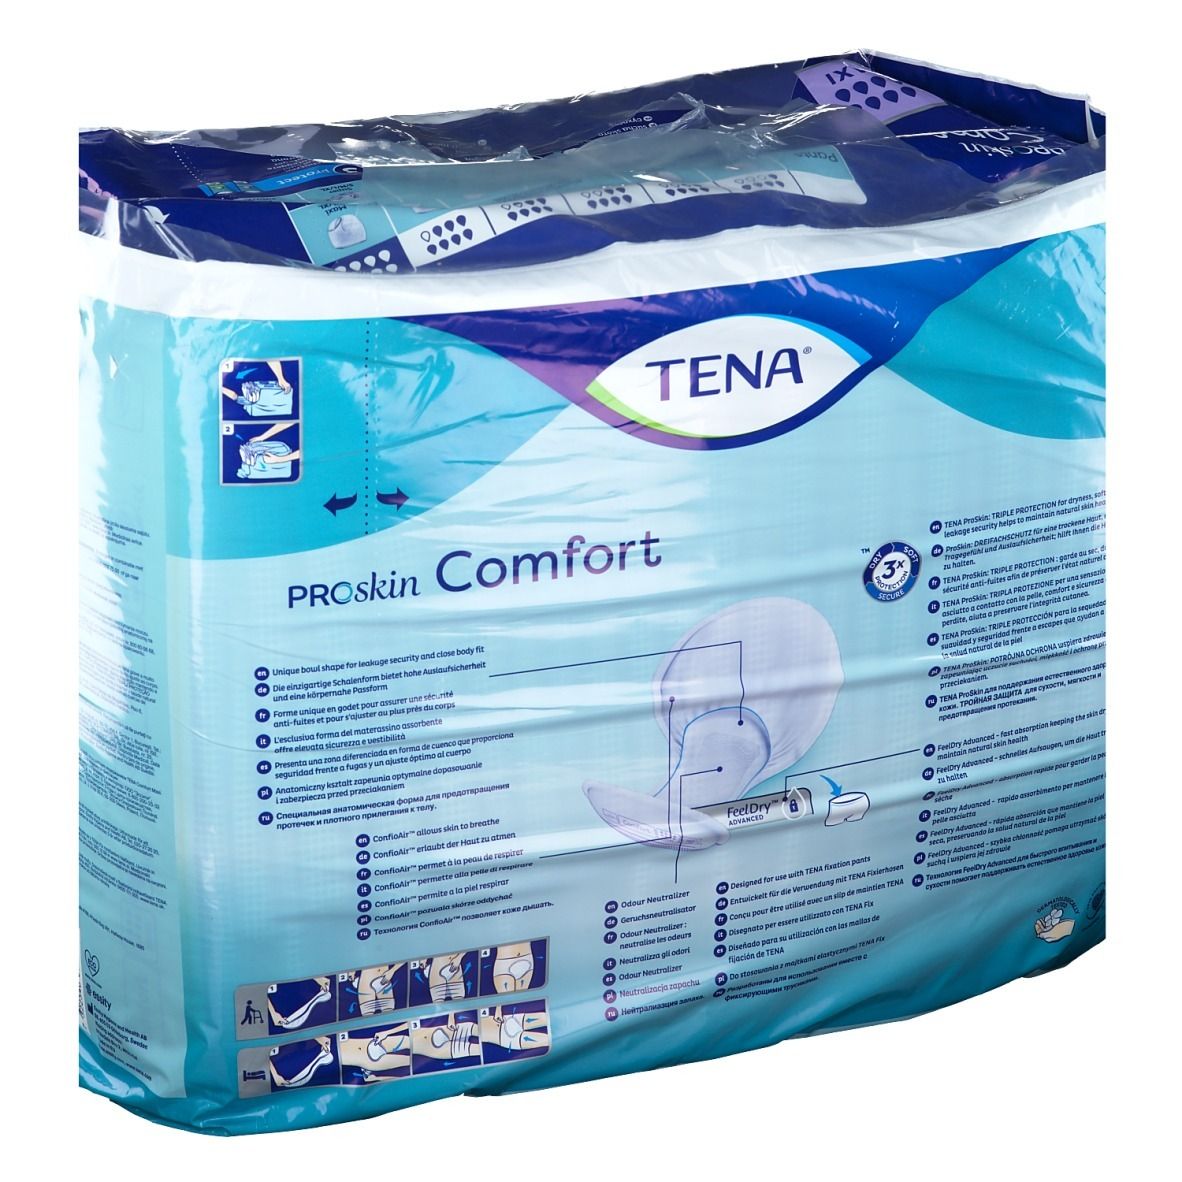 Tena® Comfort Maxi